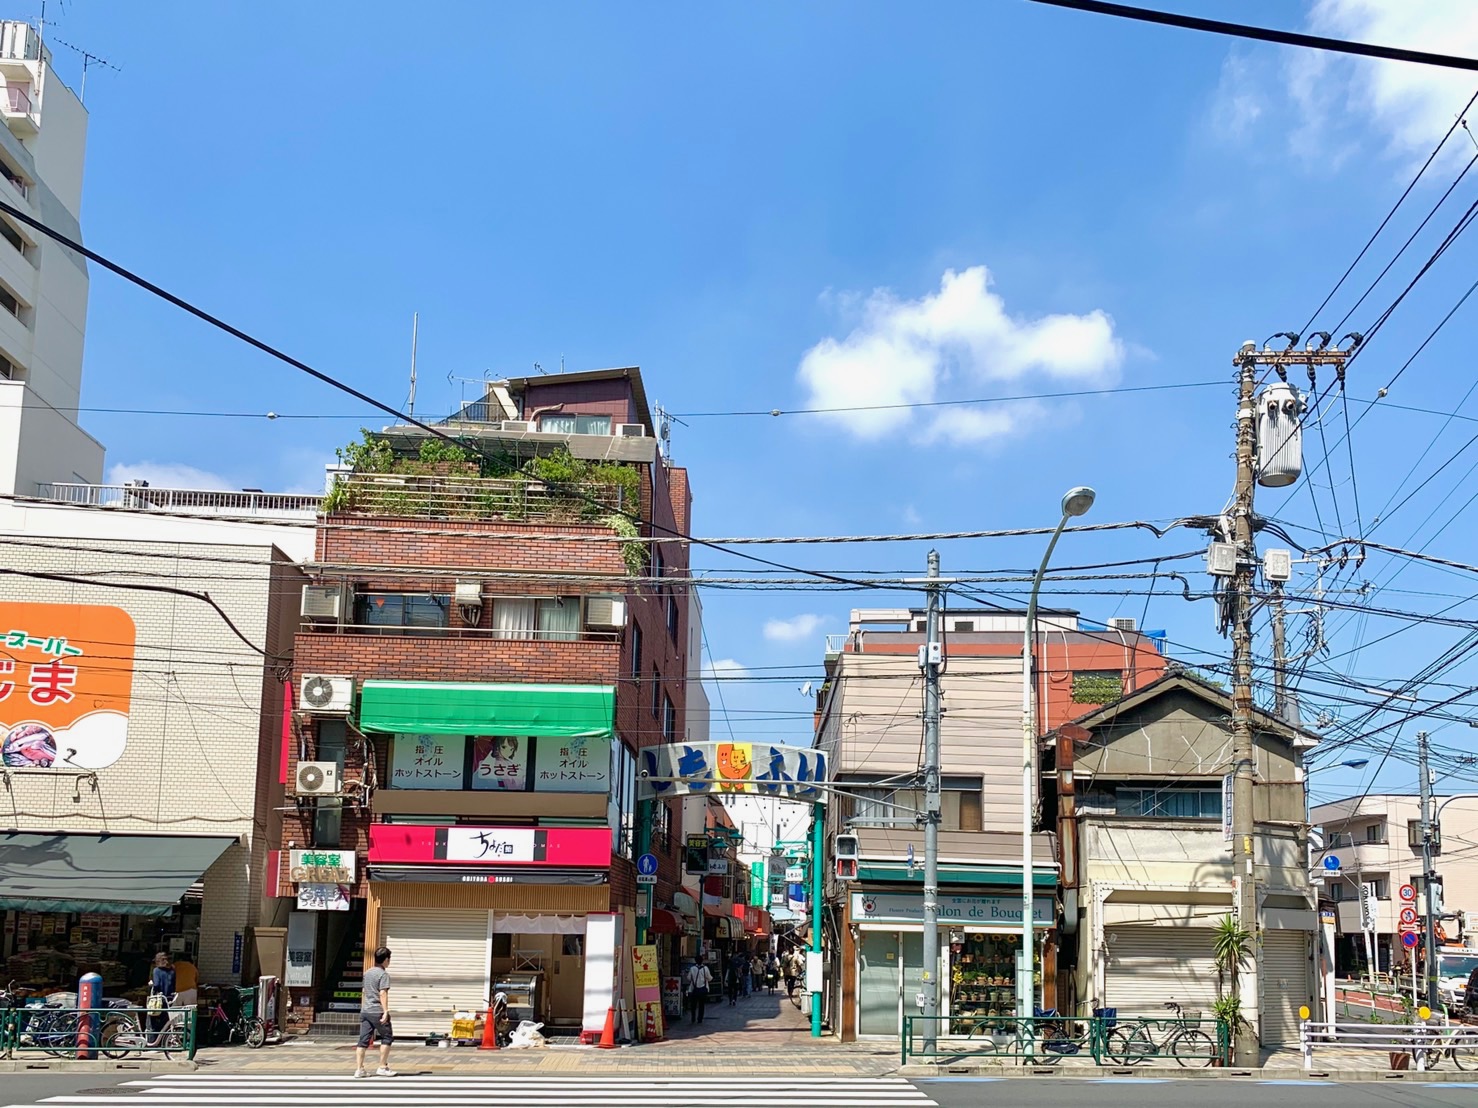 昭和を感じる飲食店やカフェなどが並ぶ商店街です。